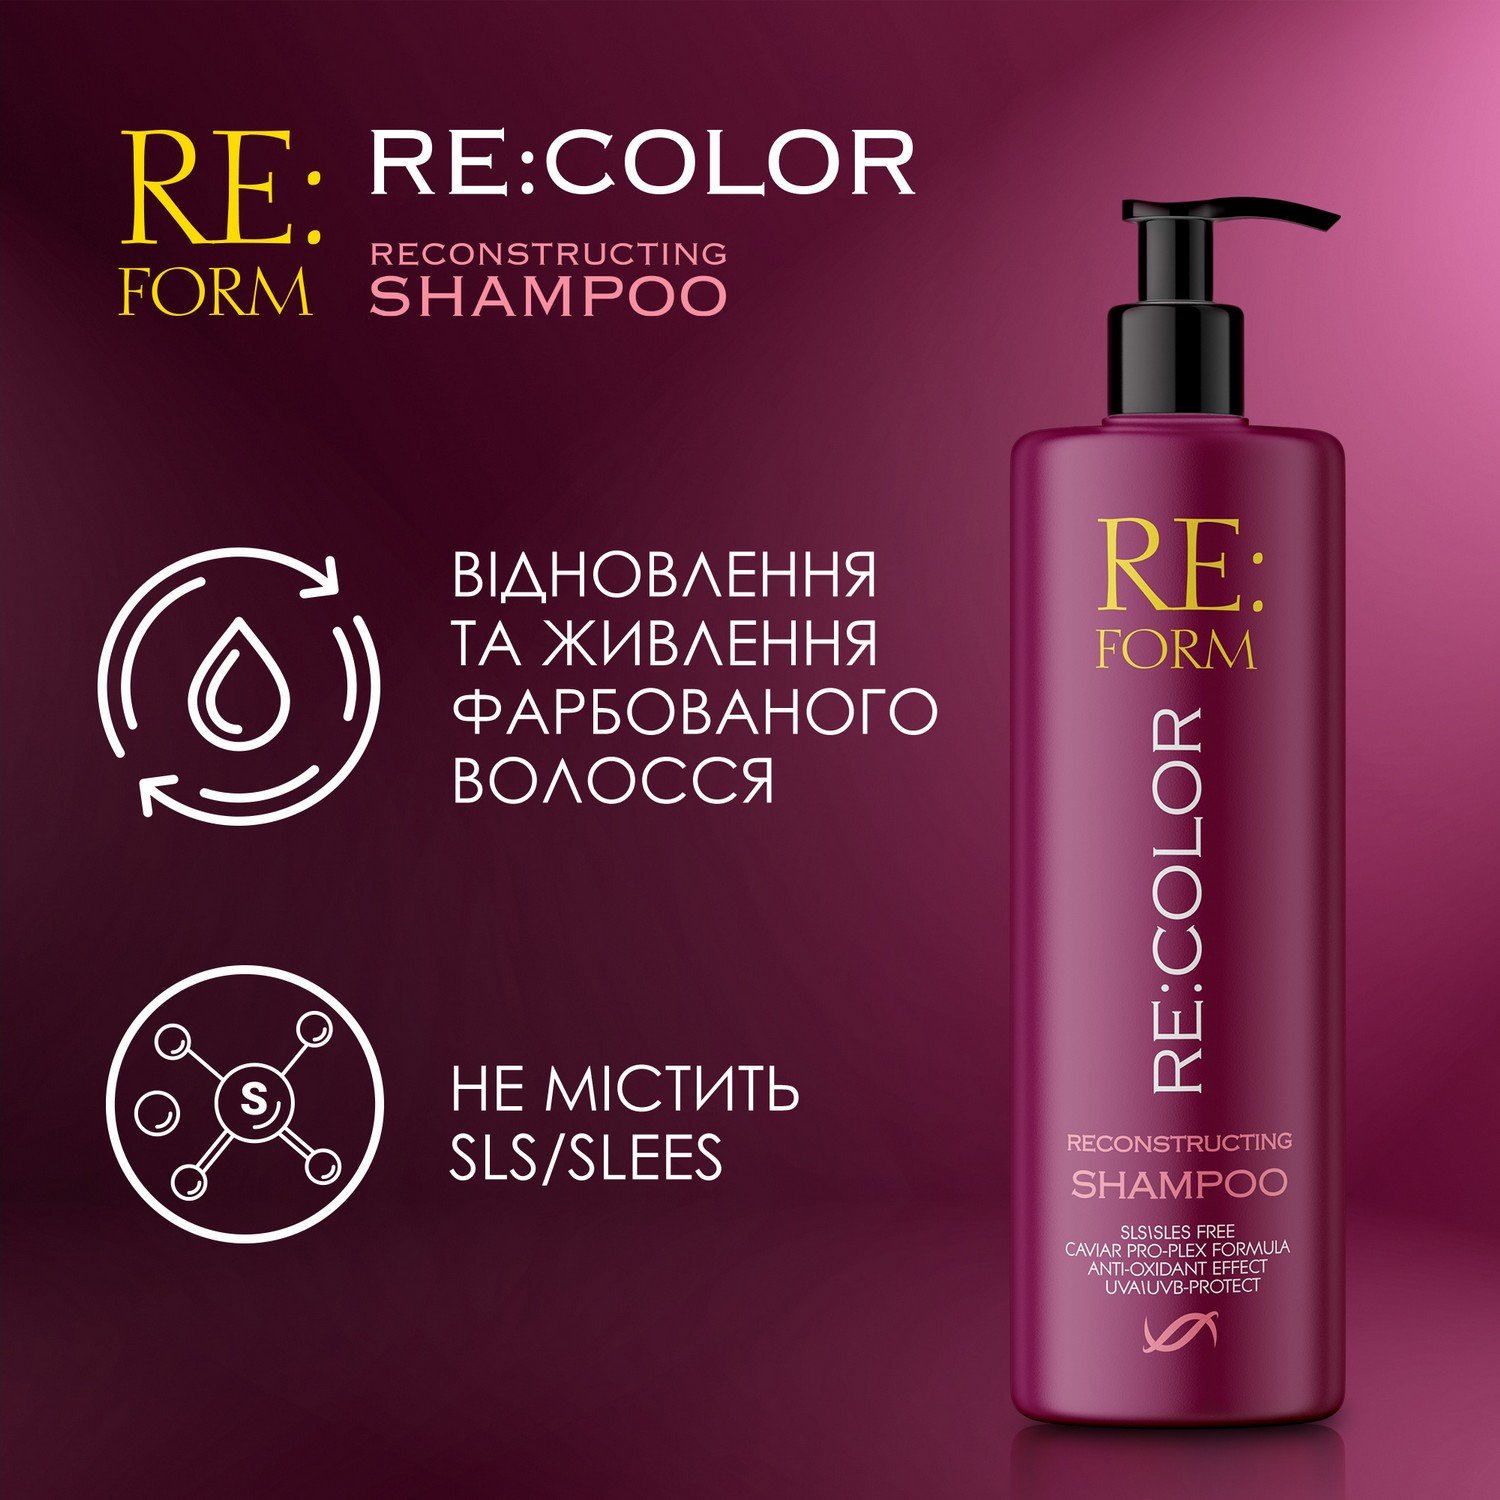 Реконструирующий шампунь Re:form Re:color Сохранение цвета и восстановление окрашенных волос, 400 мл - фото 4